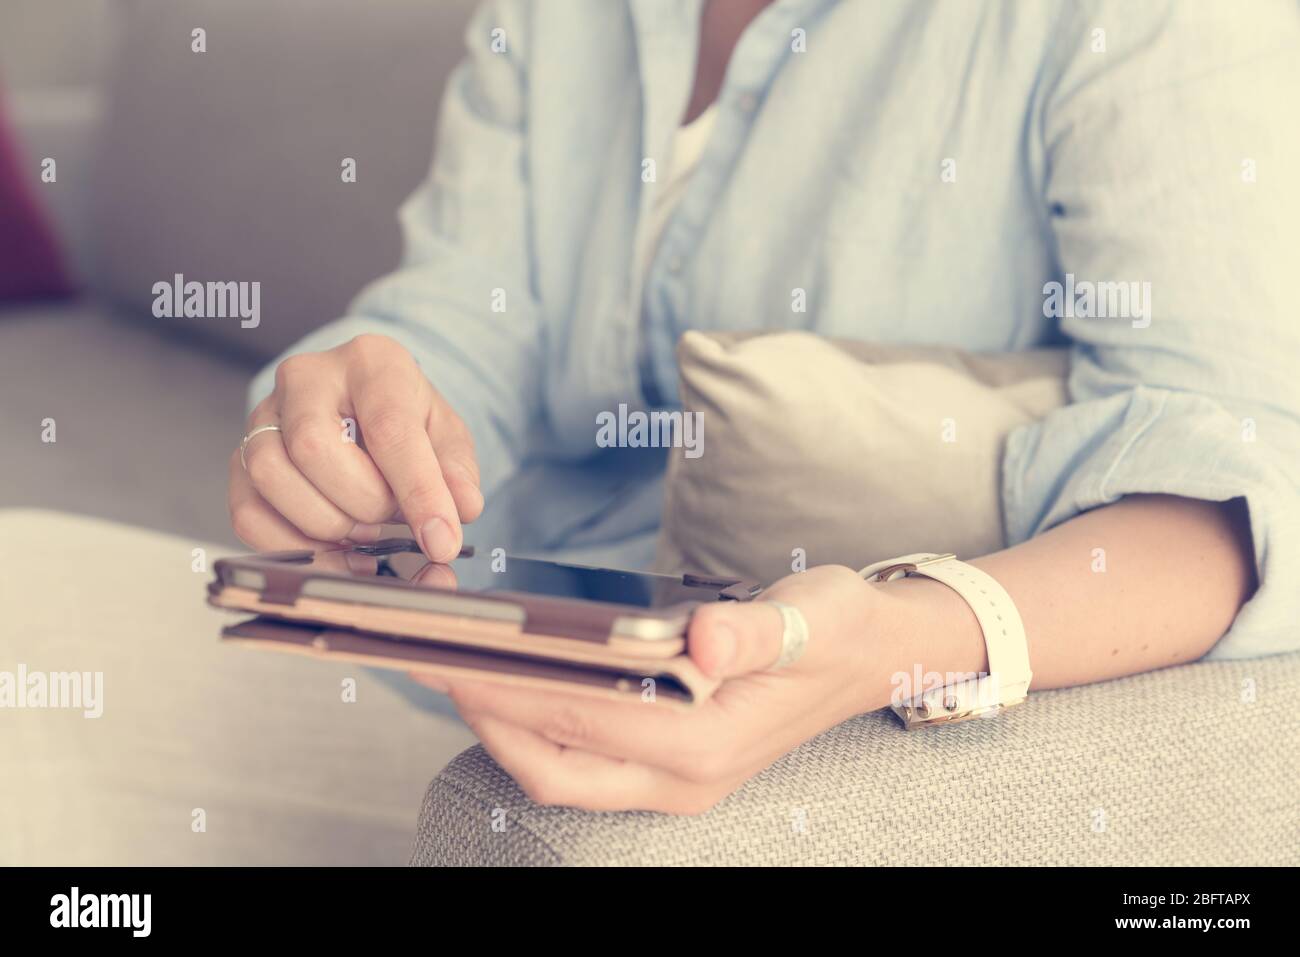 Nahaufnahme der Hände von Frauen, die Tablet-PC und einen Stift halten Stockfoto